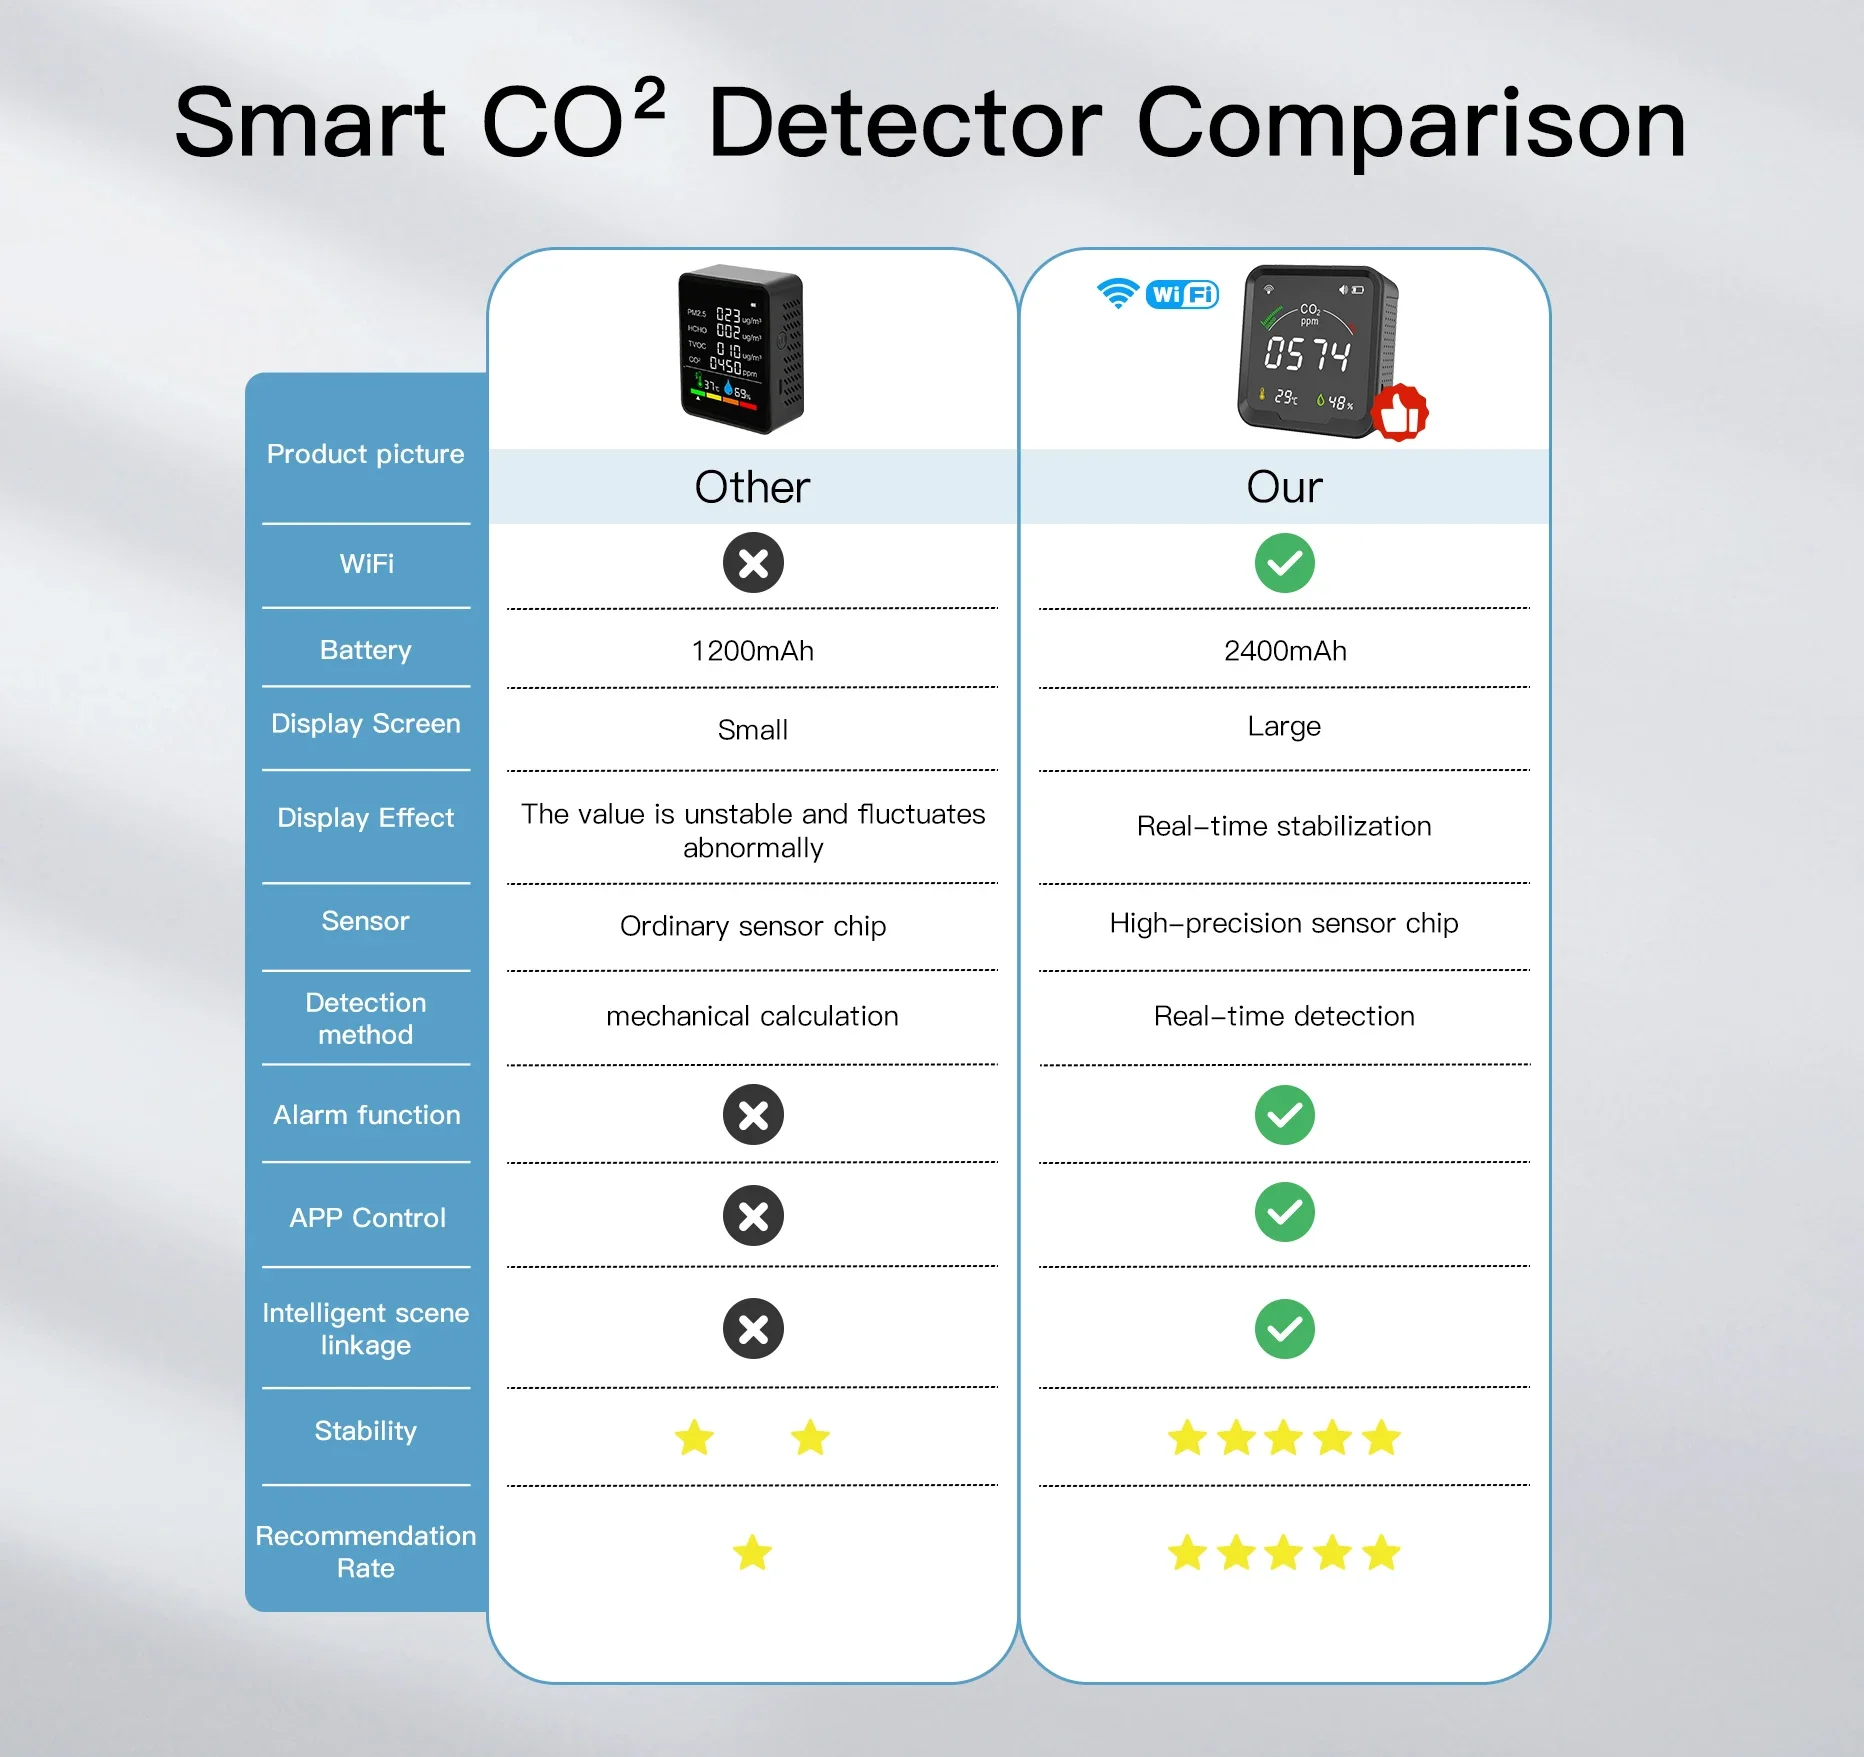 MOES-Détecteur de dioxyde de carbone de qualité de l'air avec réveil, moniteur de température, testeur d'humidité de l'air, WiFi, BT,Tuya Smart,3 en 1,CO2